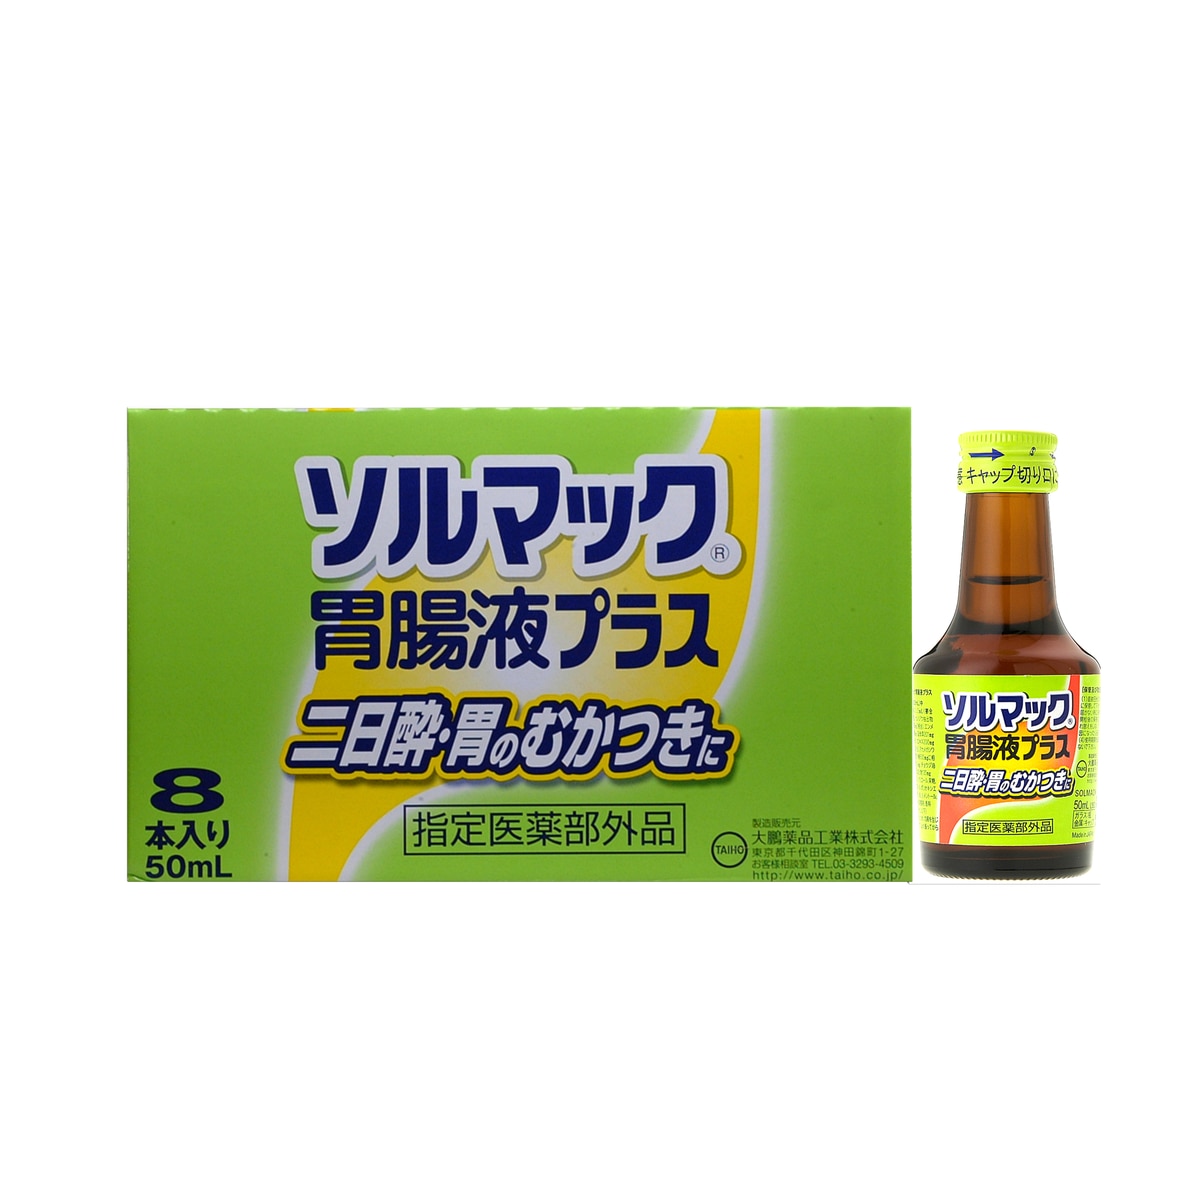 ソルマック胃腸液プラス 8本 | Costco Japan